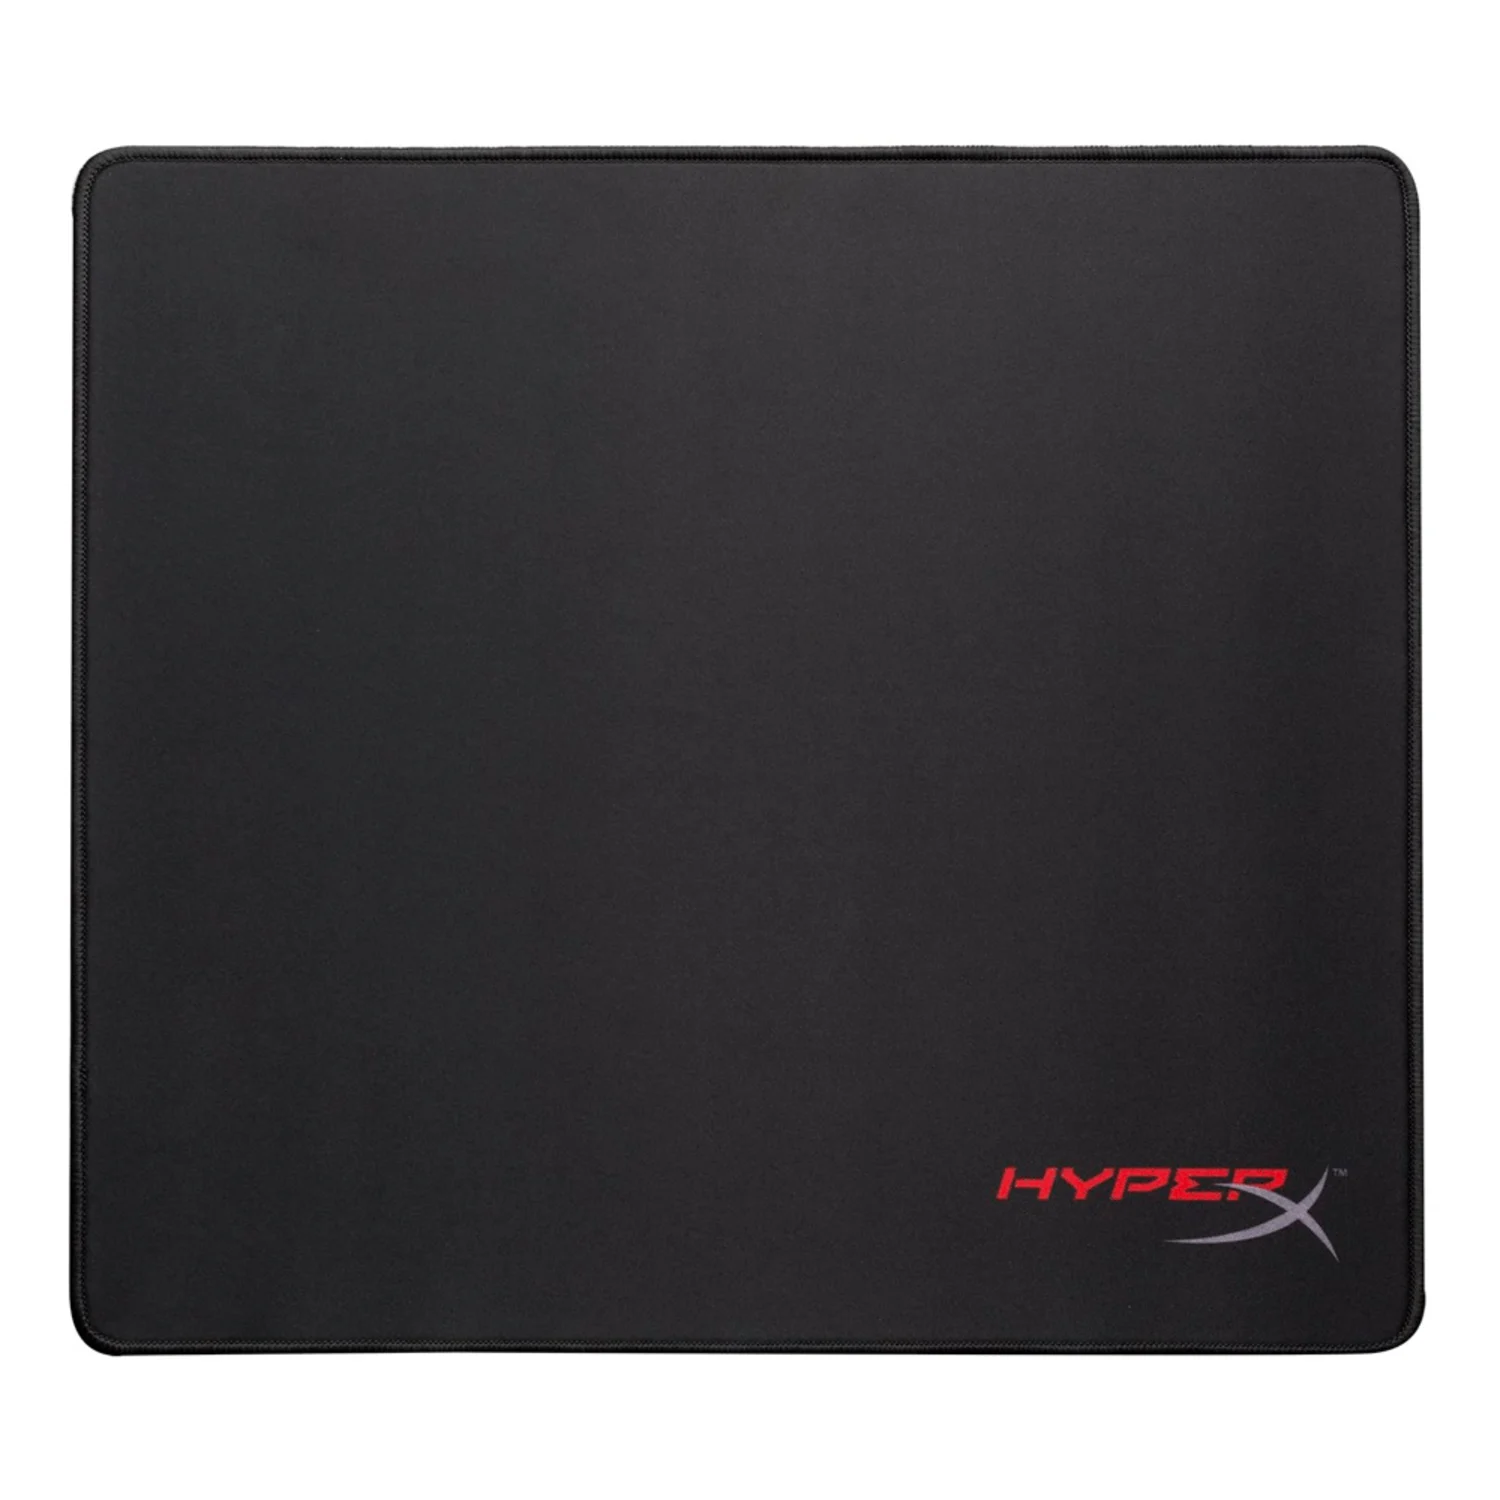 Mousepad Gamer Kingston Hyper X Fury Pro HX-MPFP-L - Large